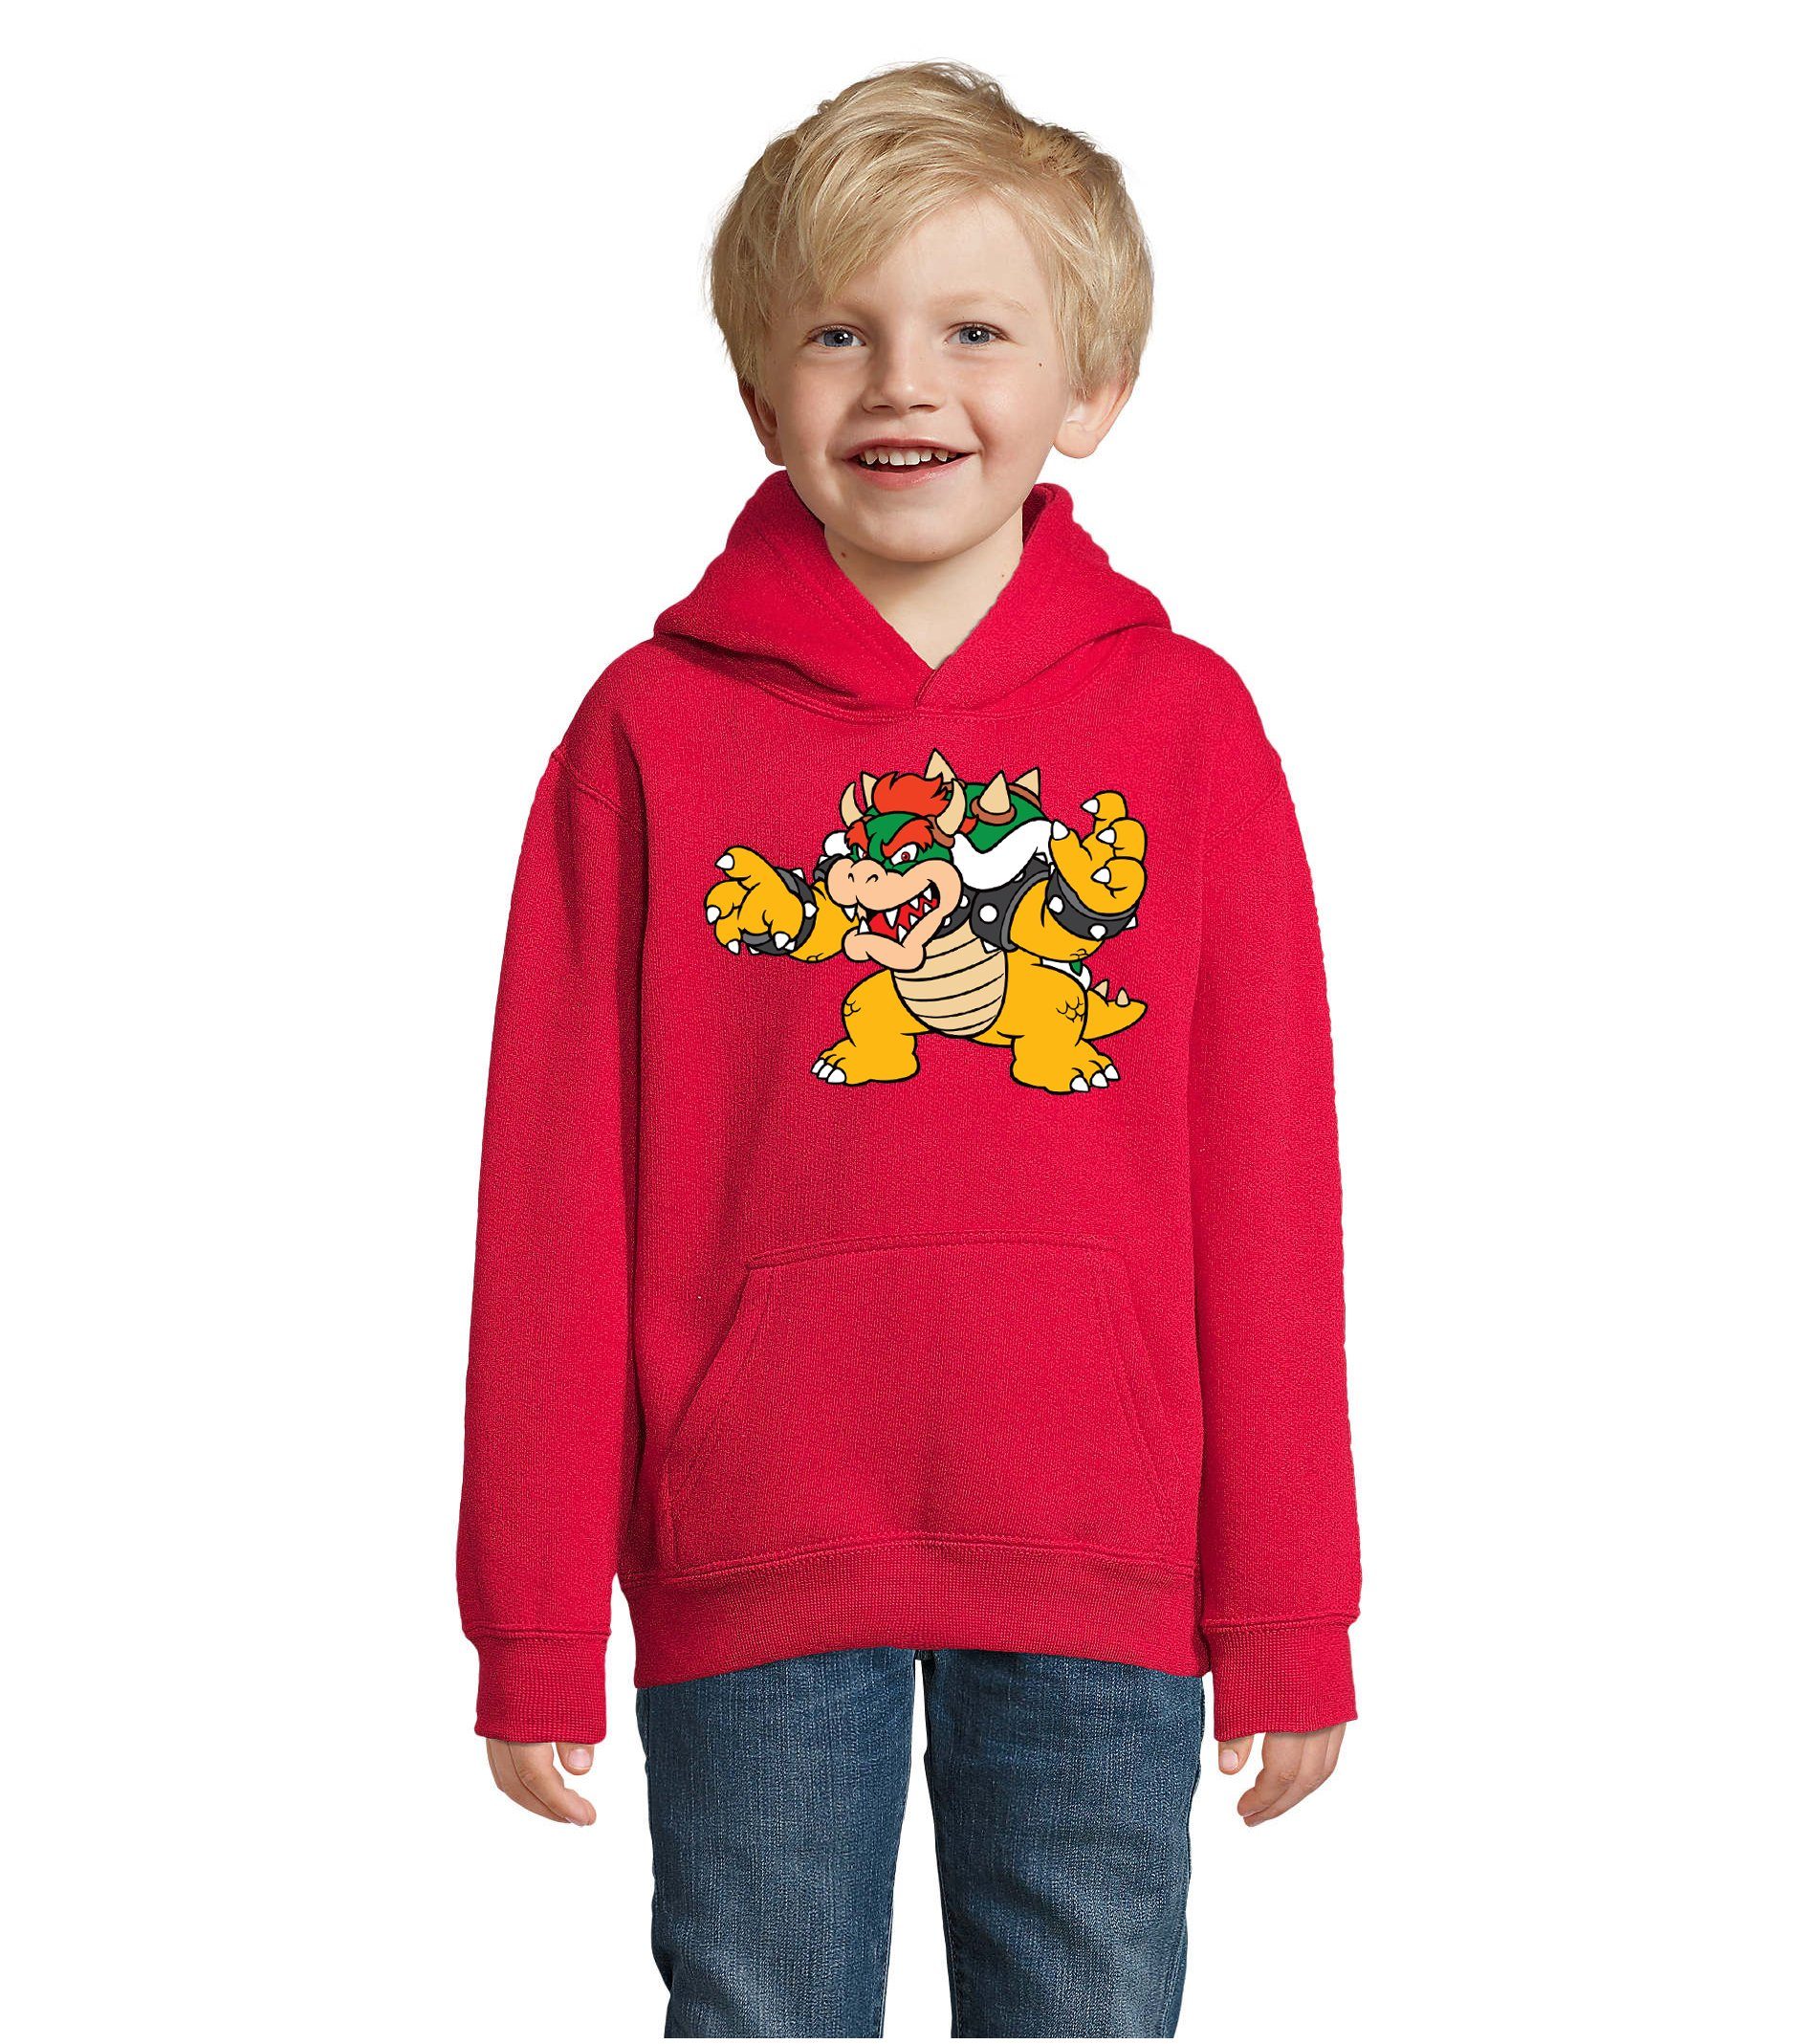 Blondie & Brownie Hoodie Kinder Bowser Nintendo Mario Yoshi Luigi Game Gamer Gaming Konsole mit Kapuze Rot